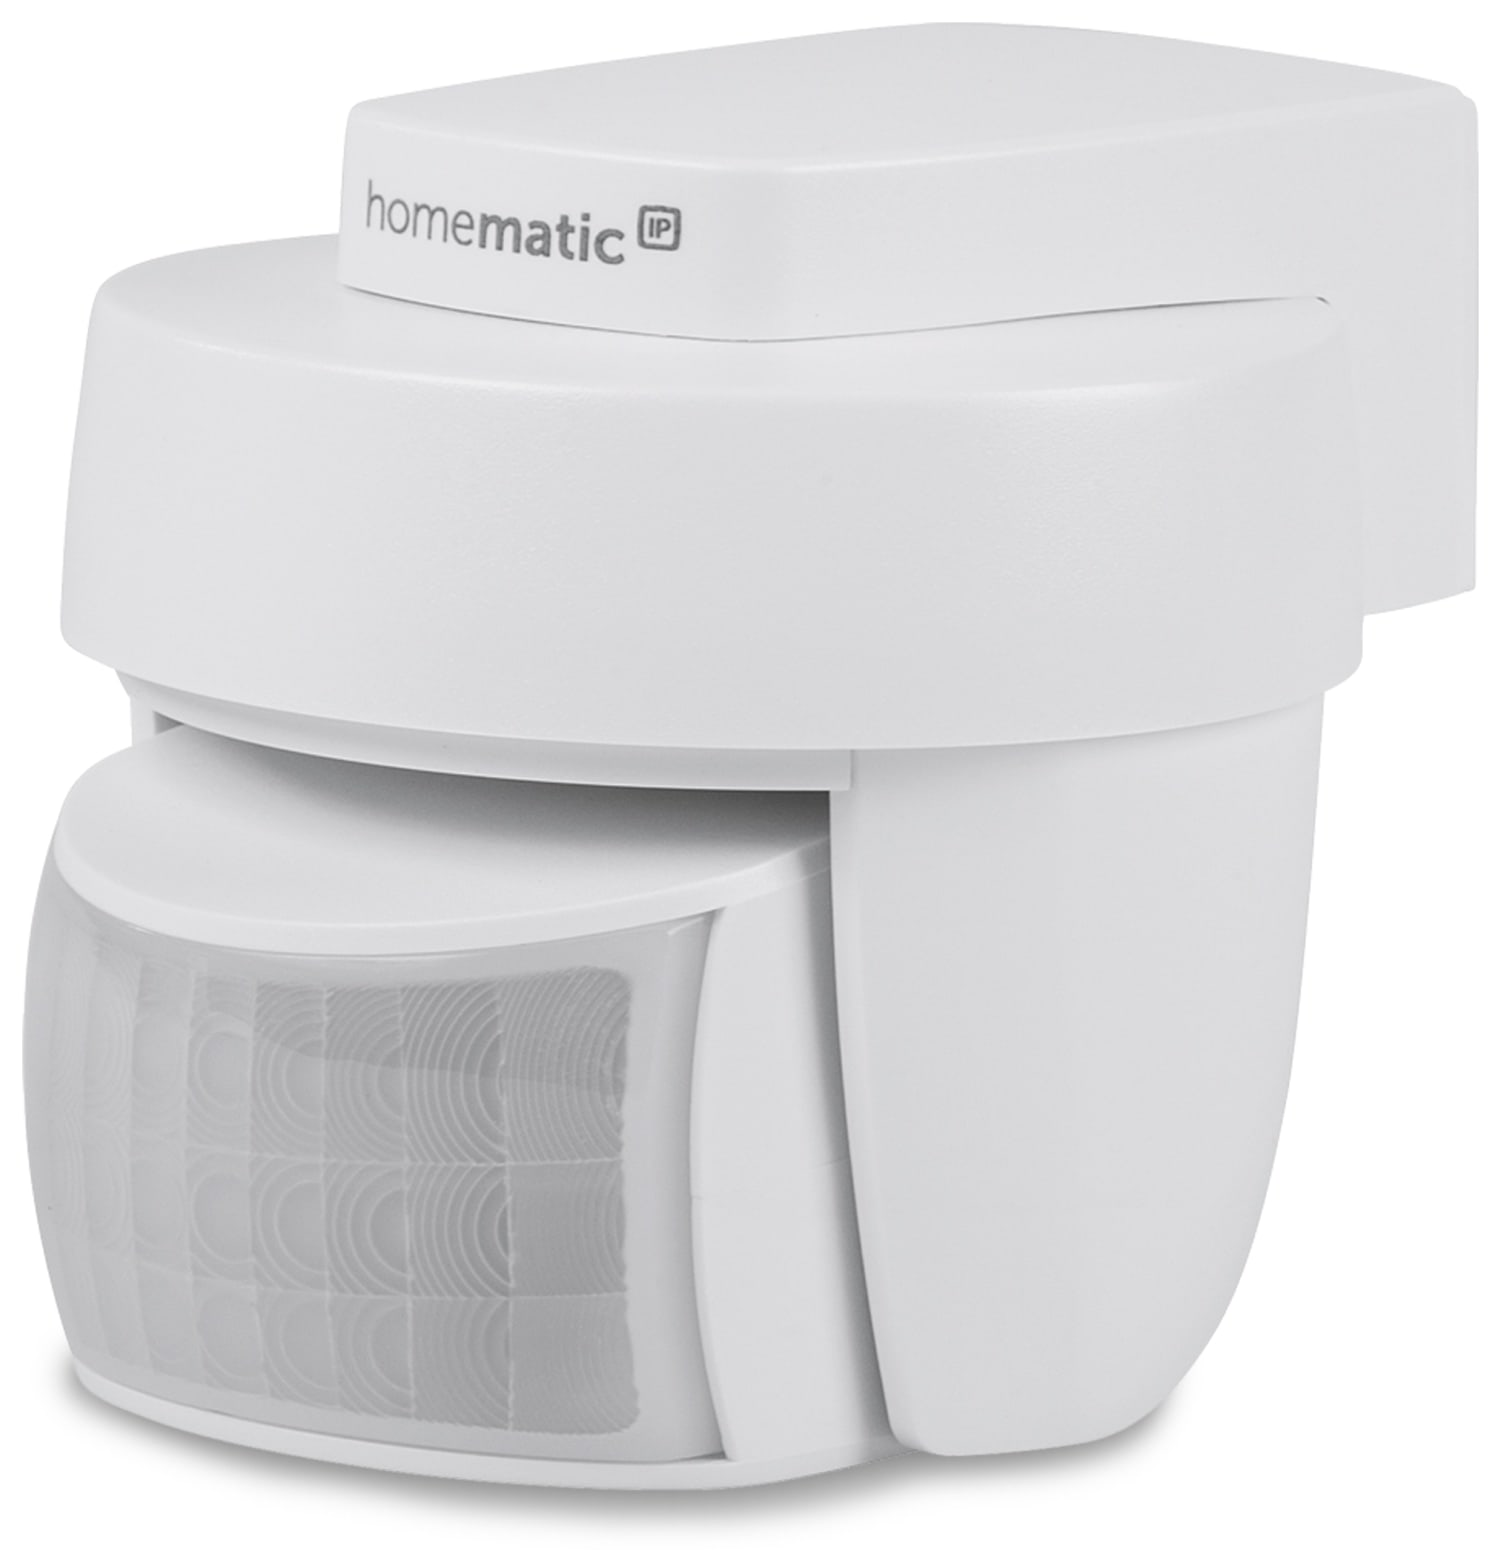 Homematic IP Smart Home 142809A0, Bewegungsmelder außen, weiß